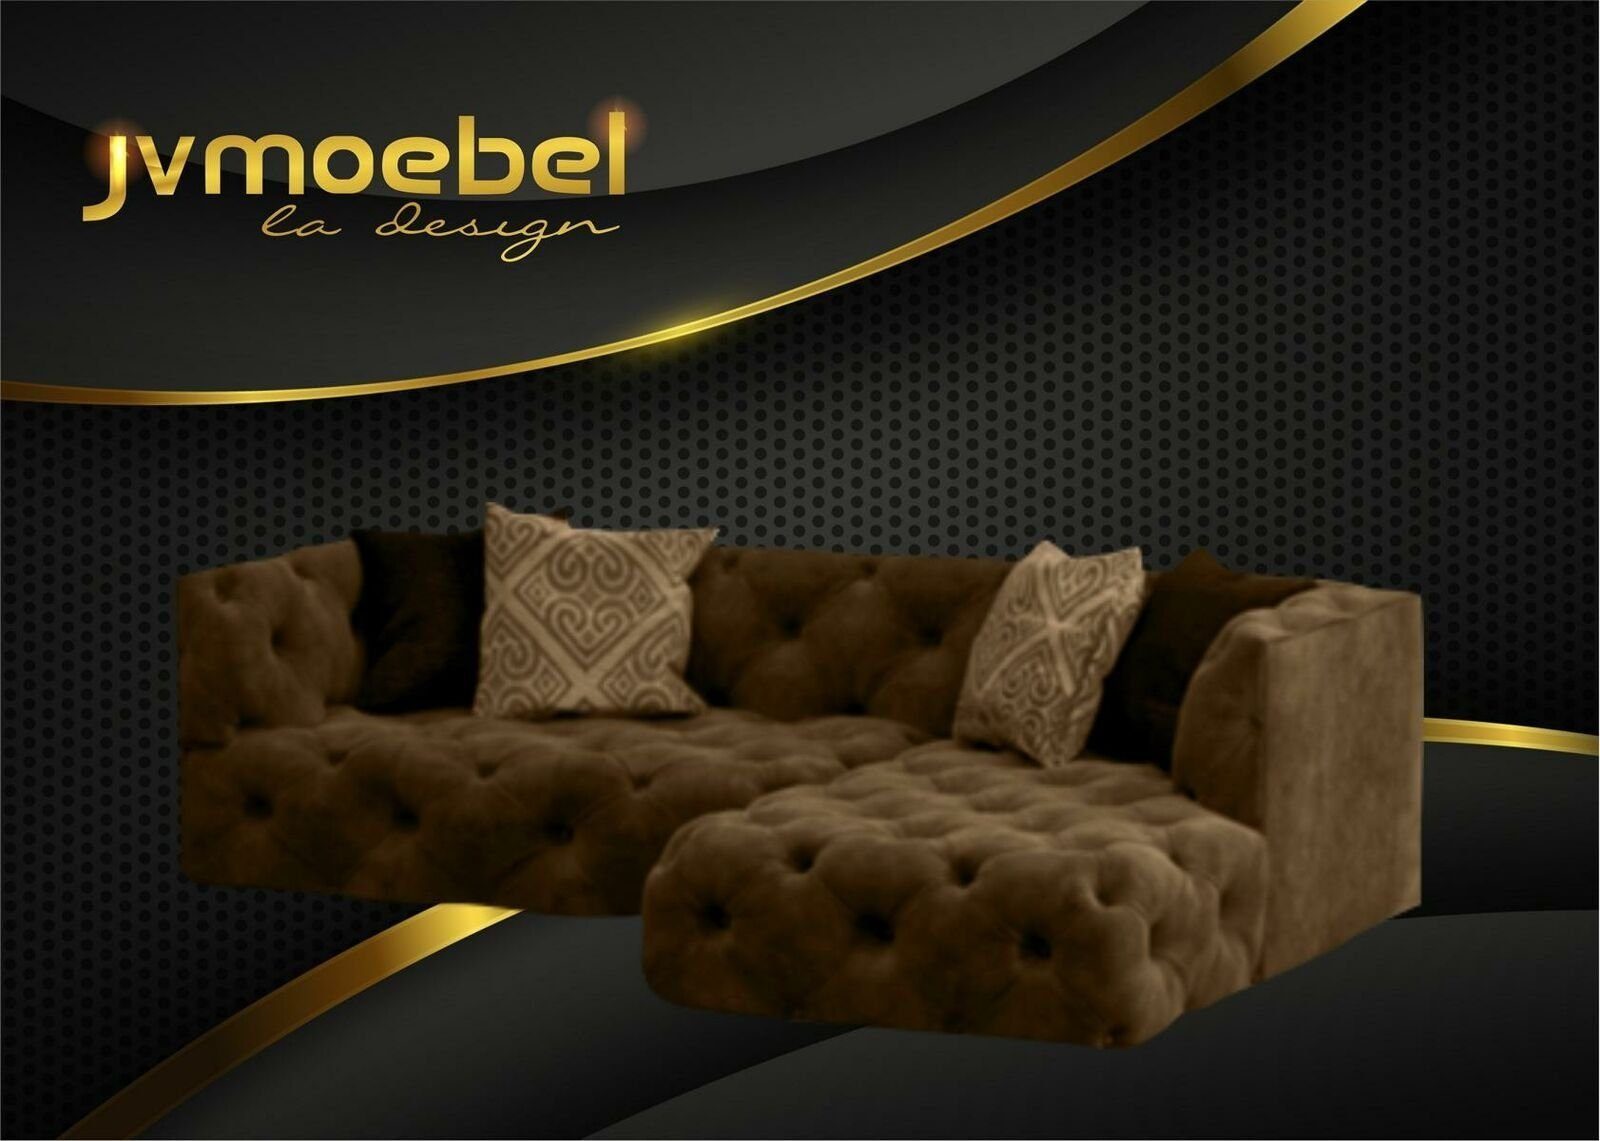 L-Form Made Ecksofa JVmoebel Braunes Couch Chesterfield Design in Europe Neu, Polstermöbel